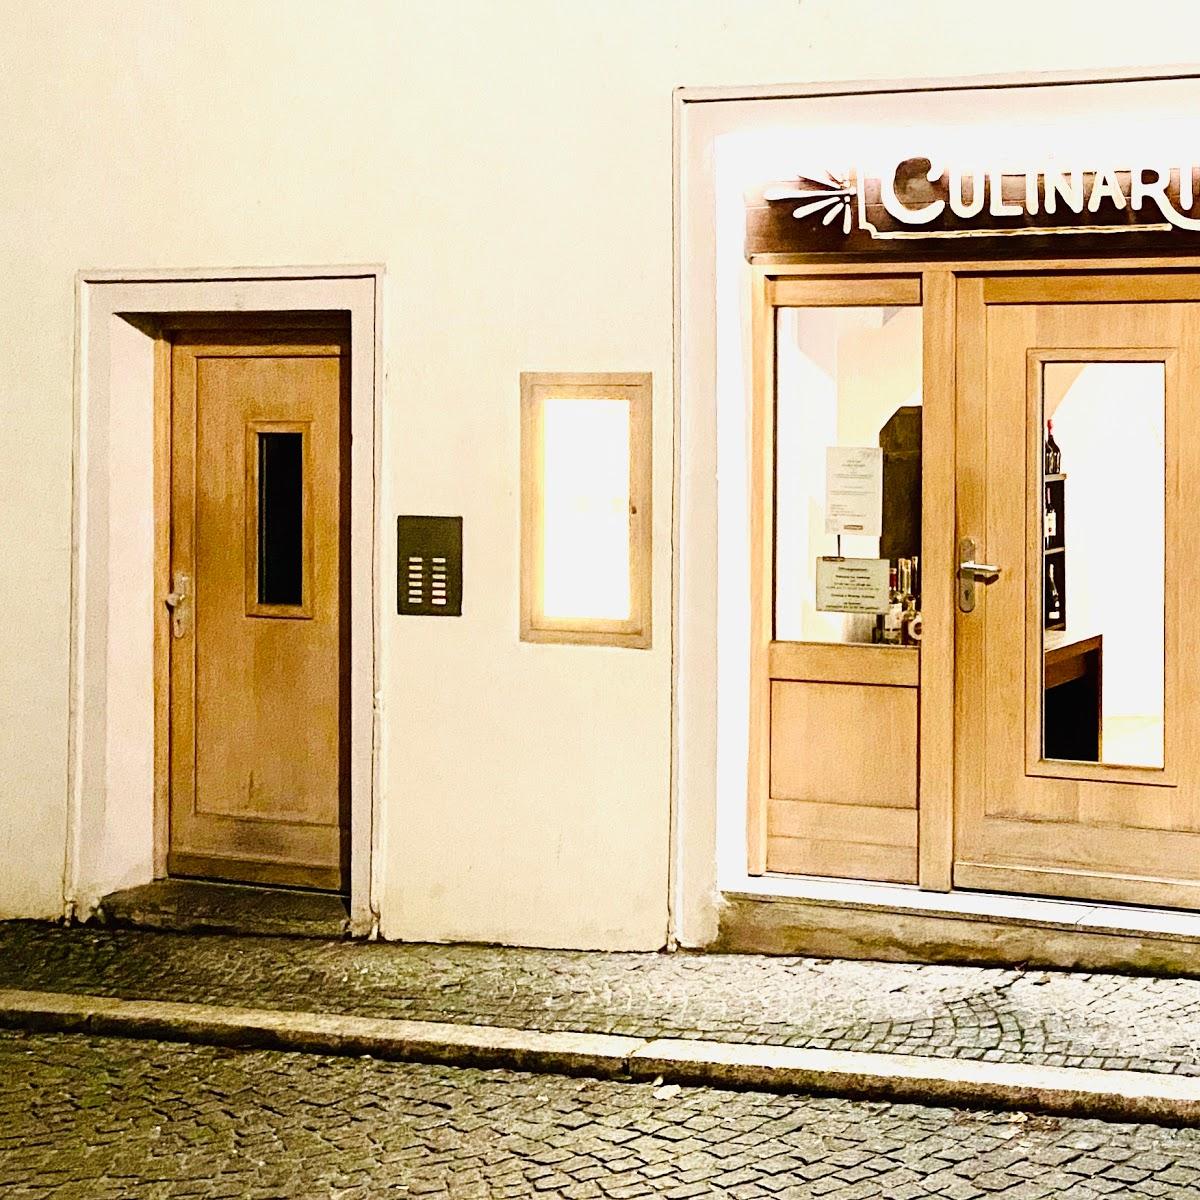 Restaurant "Culinarium" in  Passau